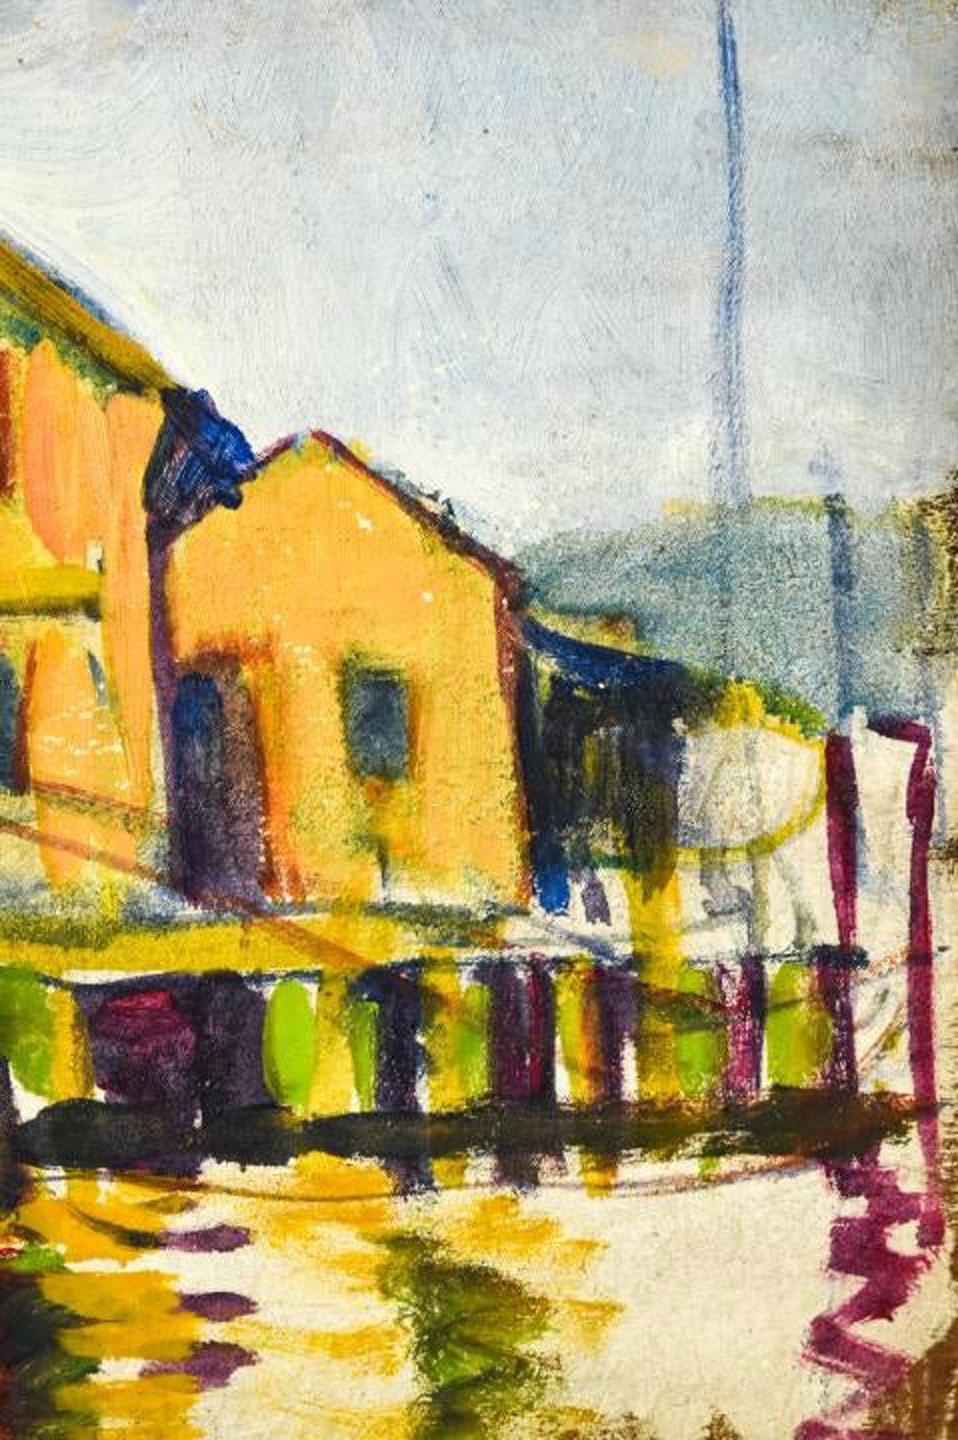 Leon Kroll zugeschriebenes Gemälde einer Szene aus Connecticut in Öl auf Holzplatte. Das kleine, aber gelungene Gemälde ist repräsentativ für die Arbeiten von Kroll. Das Gemälde zeigt eine Landschaftsszene aus Connecticut mit Gebäuden am Wasser.
In